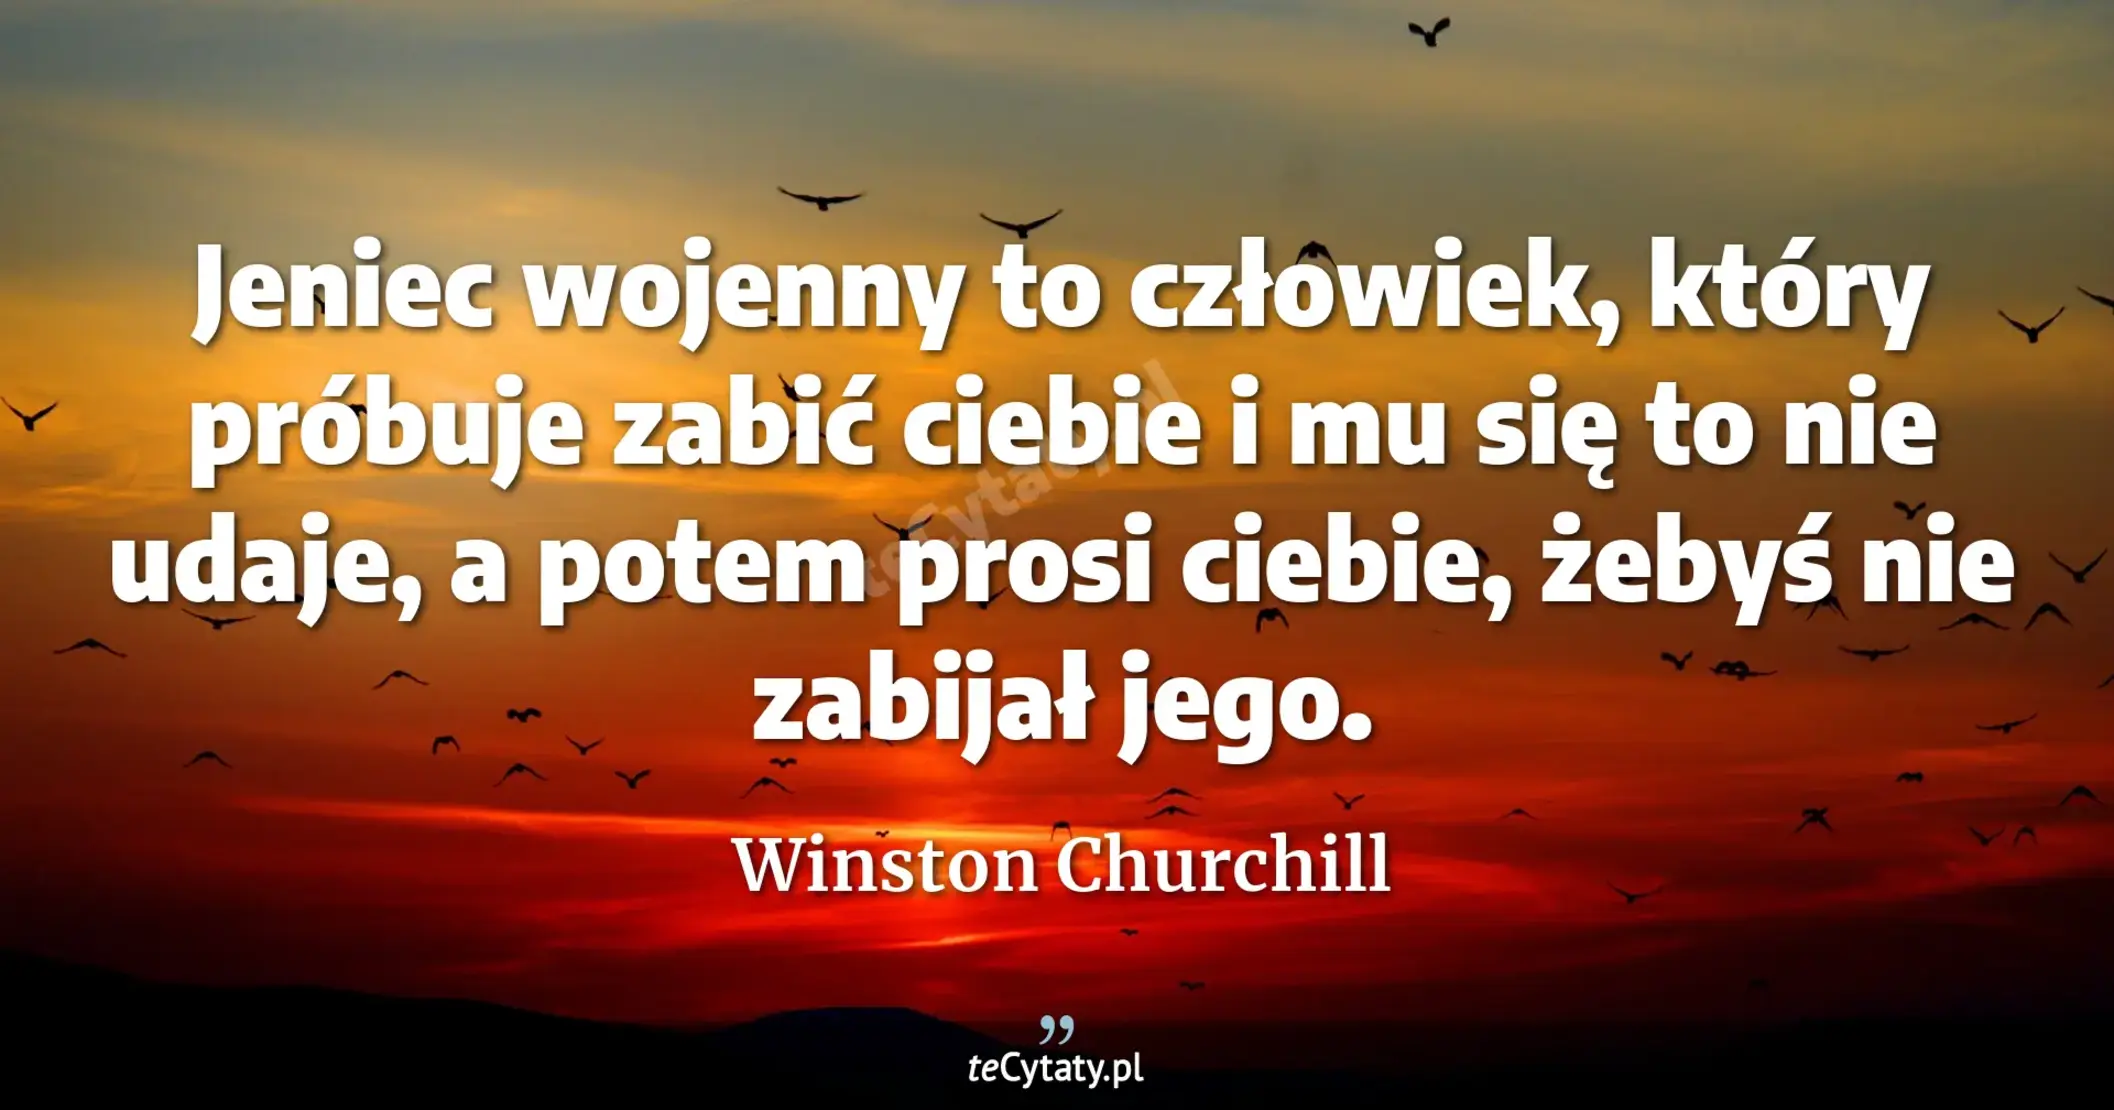 Jeniec wojenny to człowiek, który próbuje zabić ciebie i mu się to nie udaje, a potem prosi ciebie, żebyś nie zabijał jego. - Winston Churchill